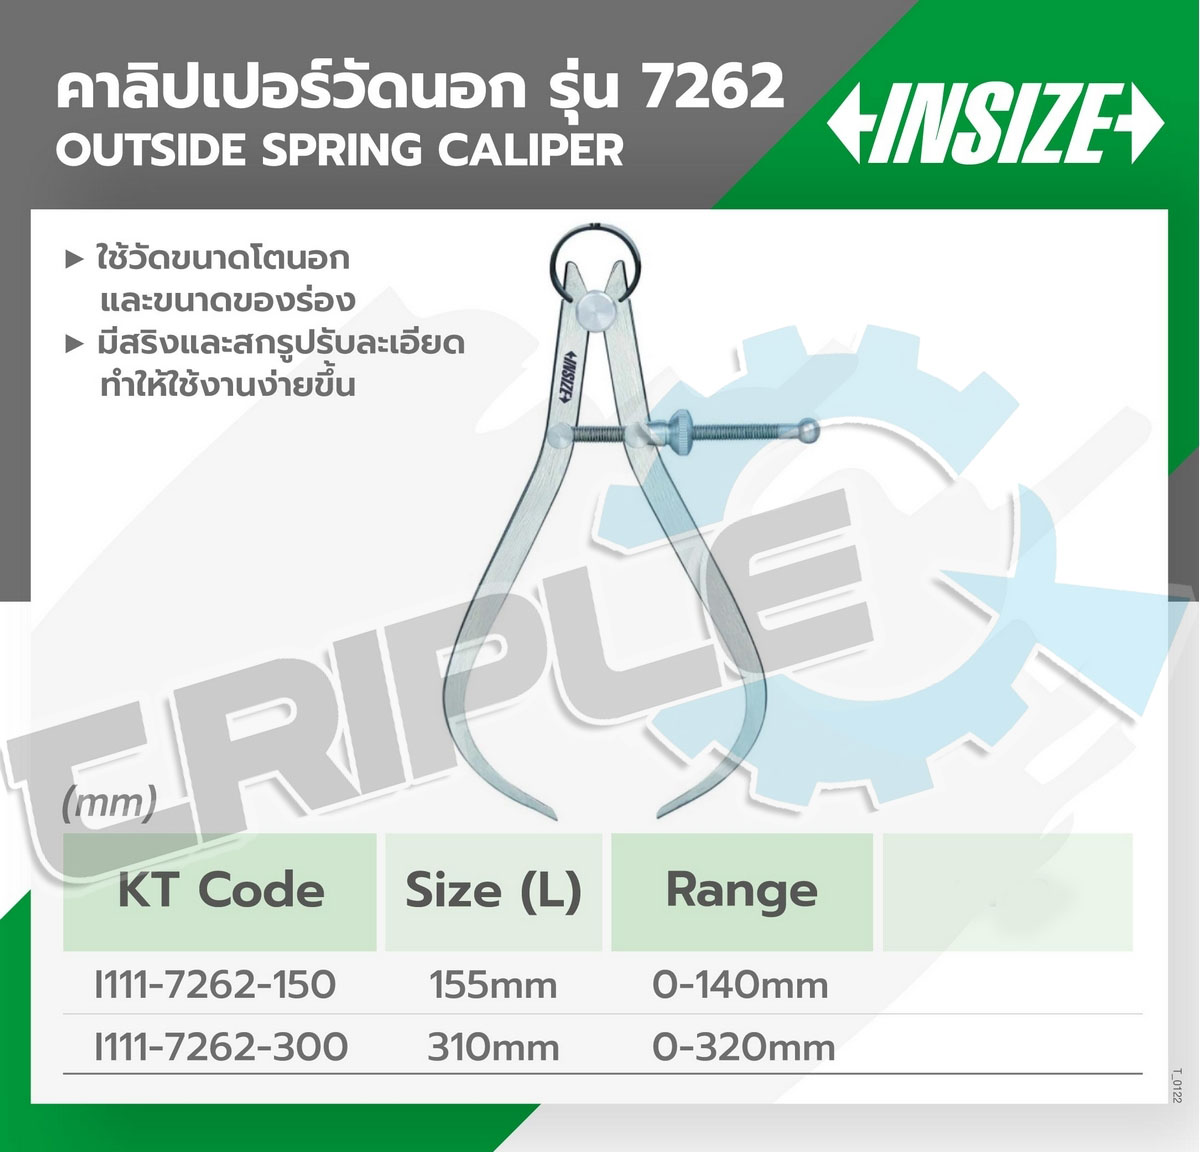 INSIZE - คาลิปเปอร์วัดรูนอก รุ่น 7262-300 ขนาด 12 นิ้ว (310 มม.) ระยะวัด 0-320 มม. ใช้วัดขนาดของรูและร่องด้านนอก มีสปริงและสกูรปรับละเอียดทำให้ใช้งานง่ายขึ้น